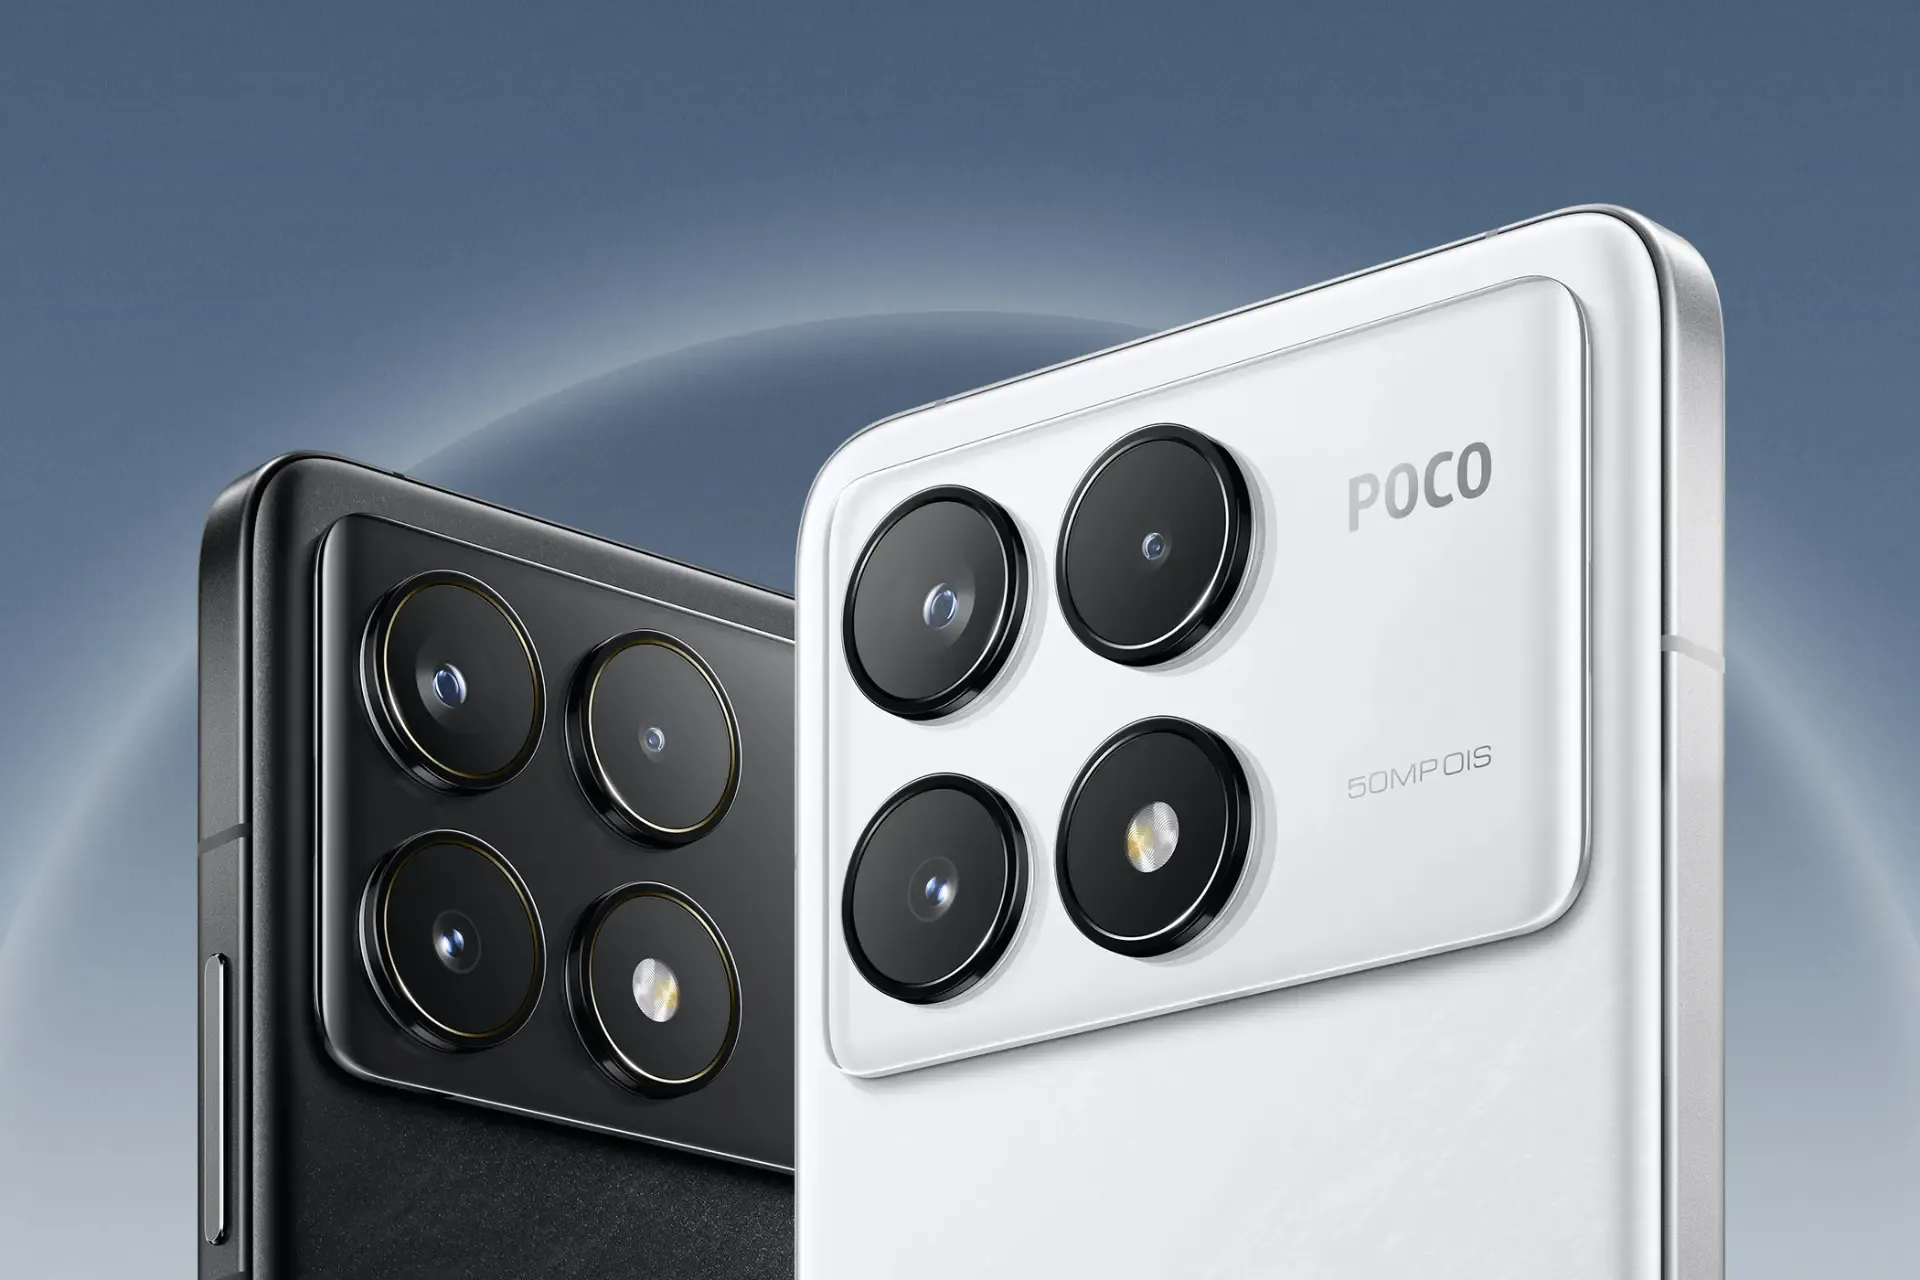 مشخصات فنی گوشی پوکو F6 پرو / همه چیز درباره POCO F6 Pro